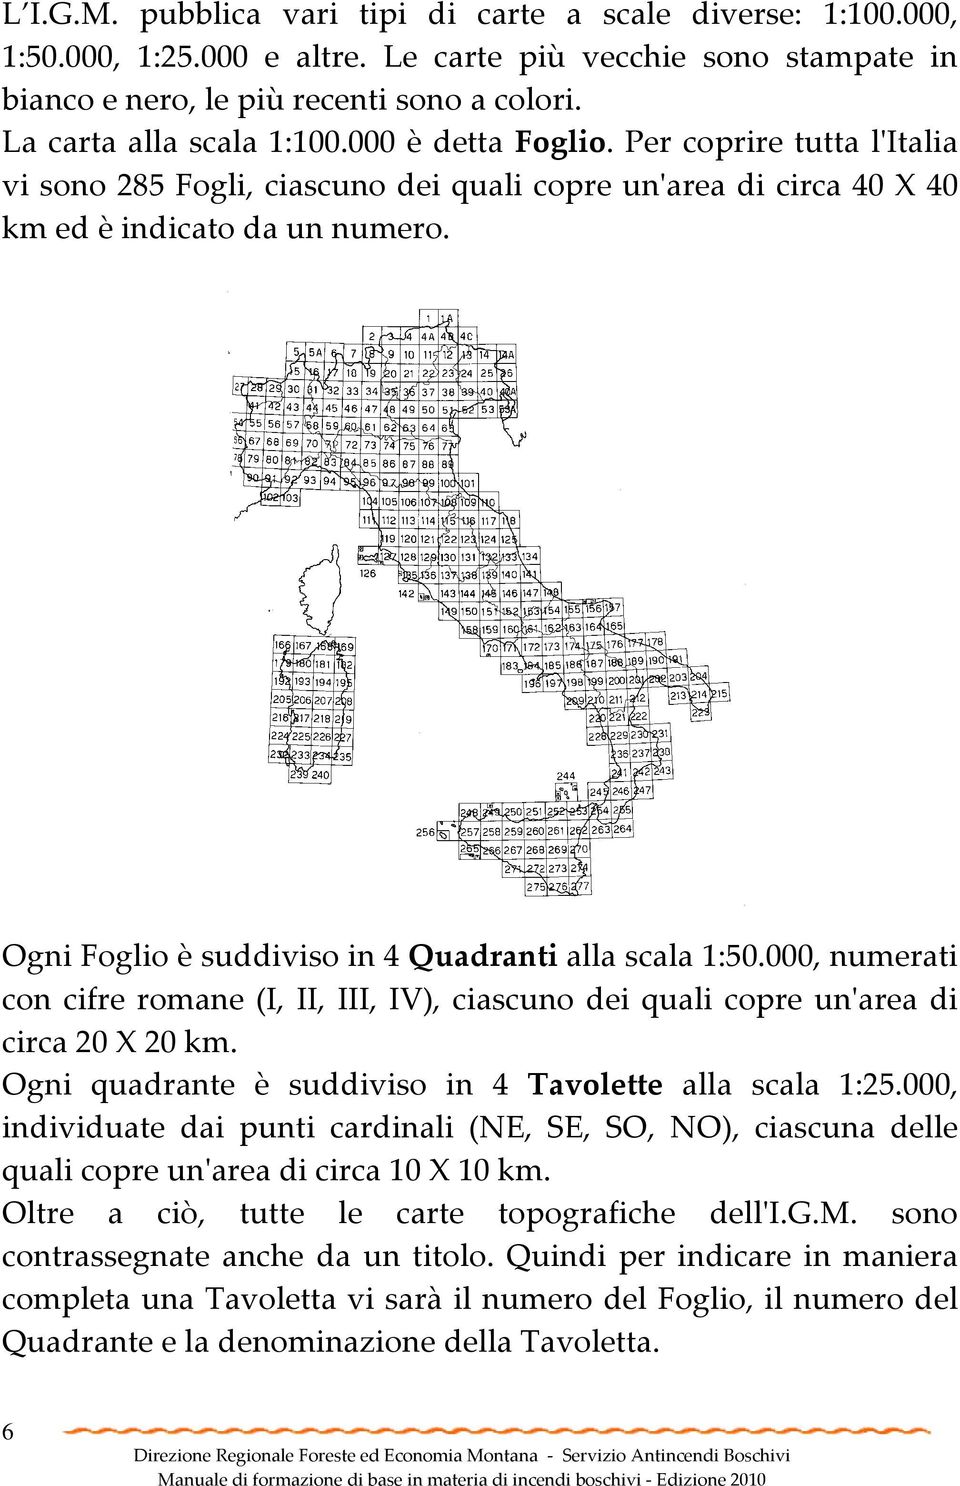 Ogni Foglio è suddiviso in 4 Quadranti alla scala 1:50.000, numerati con cifre romane (I, II, III, IV), ciascuno dei quali copre un'area di circa 20 X 20 km.